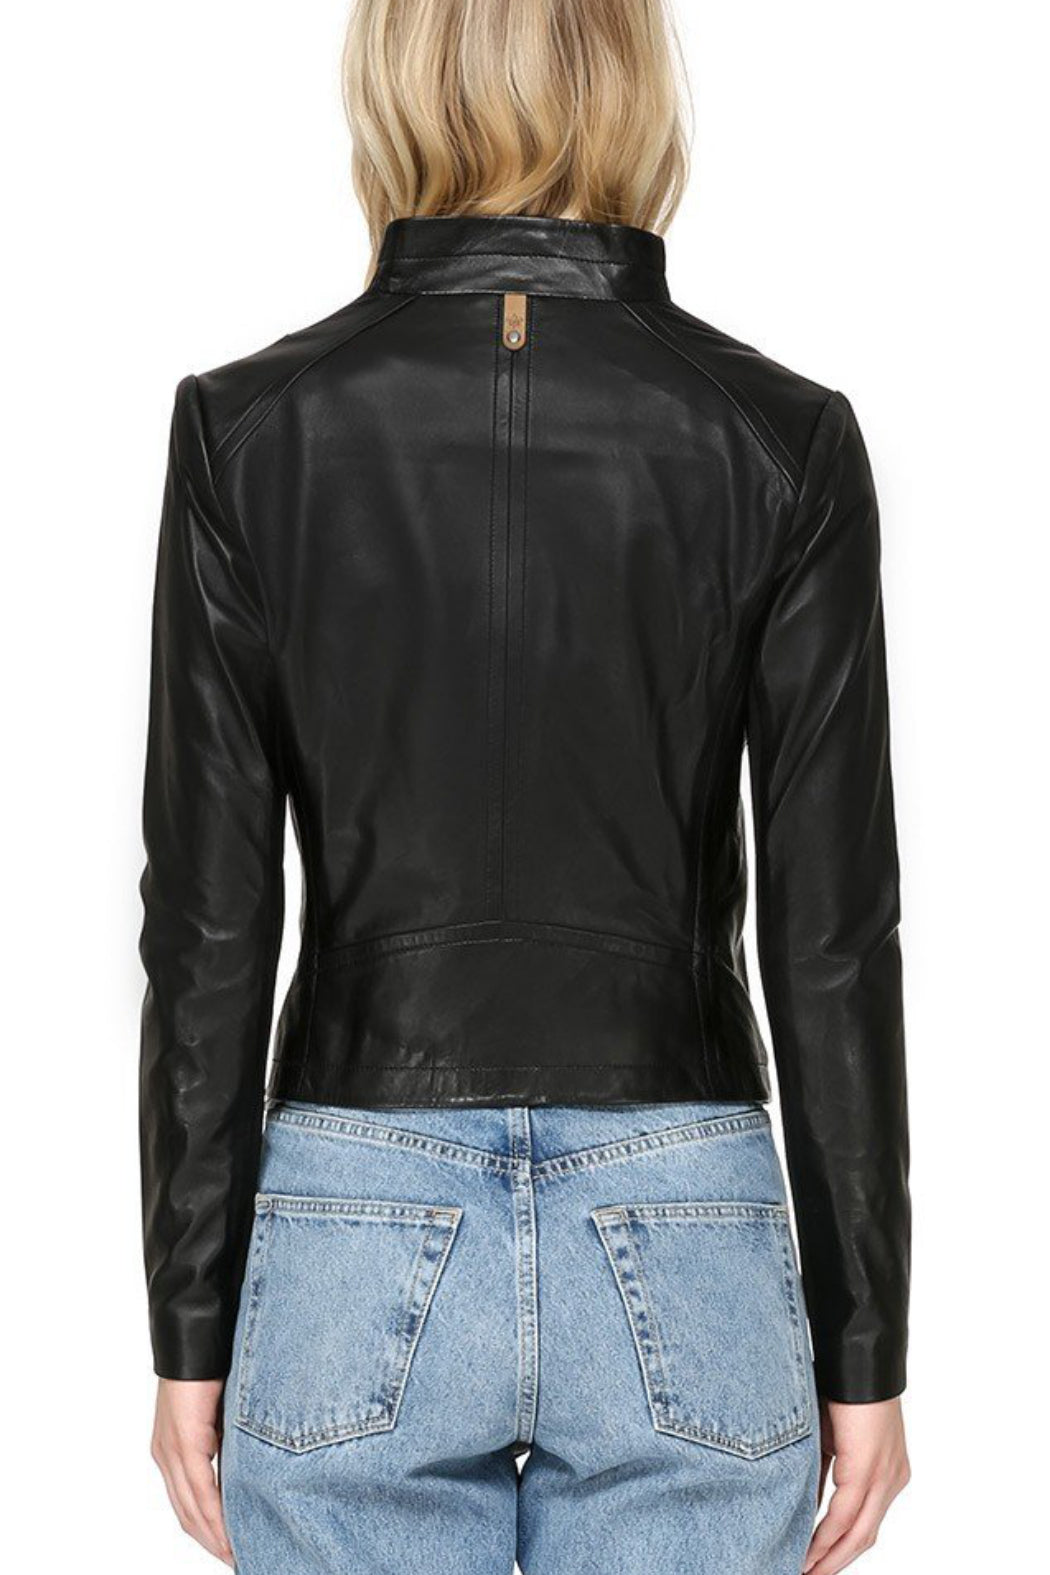 Pina Leather Jacket